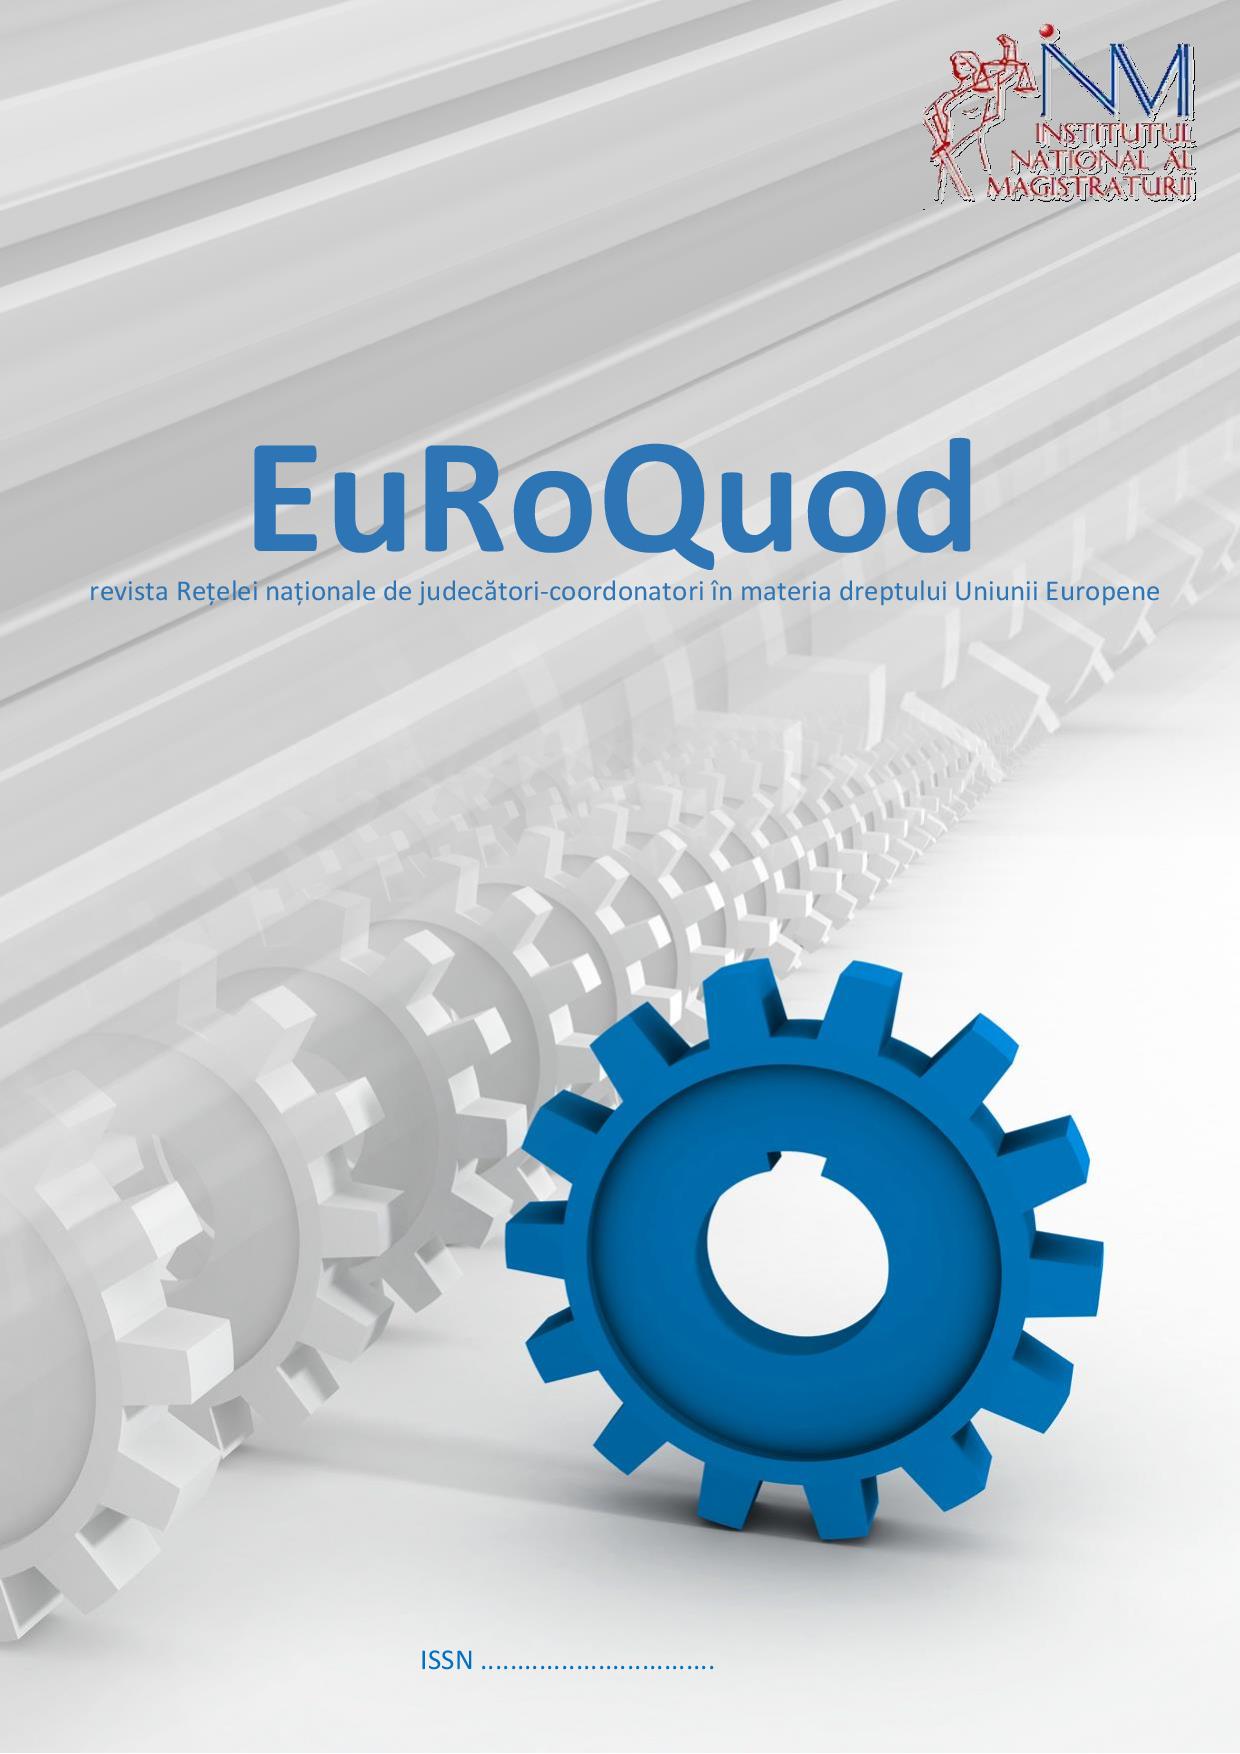 EuRoQuod Magazine Cover Image